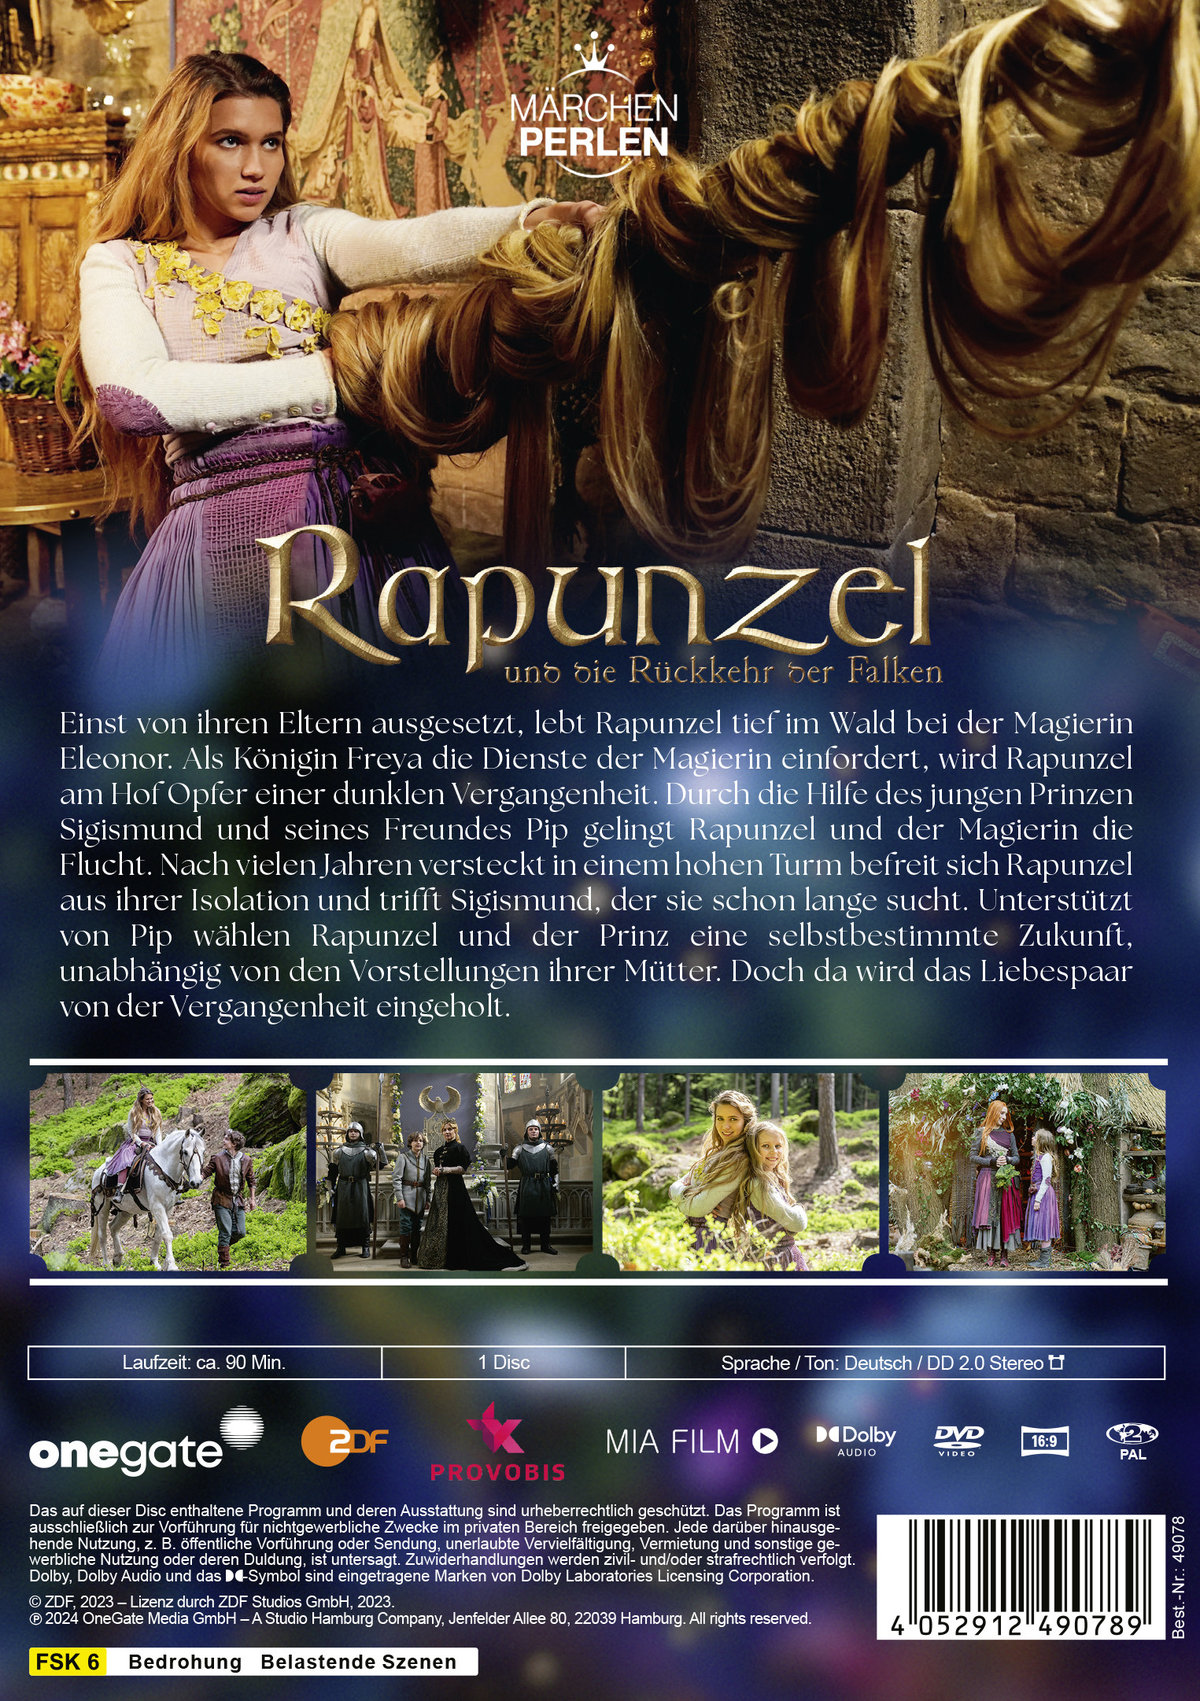 Märchenperlen: Rapunzel und die Rückkehr der Falken  (DVD)